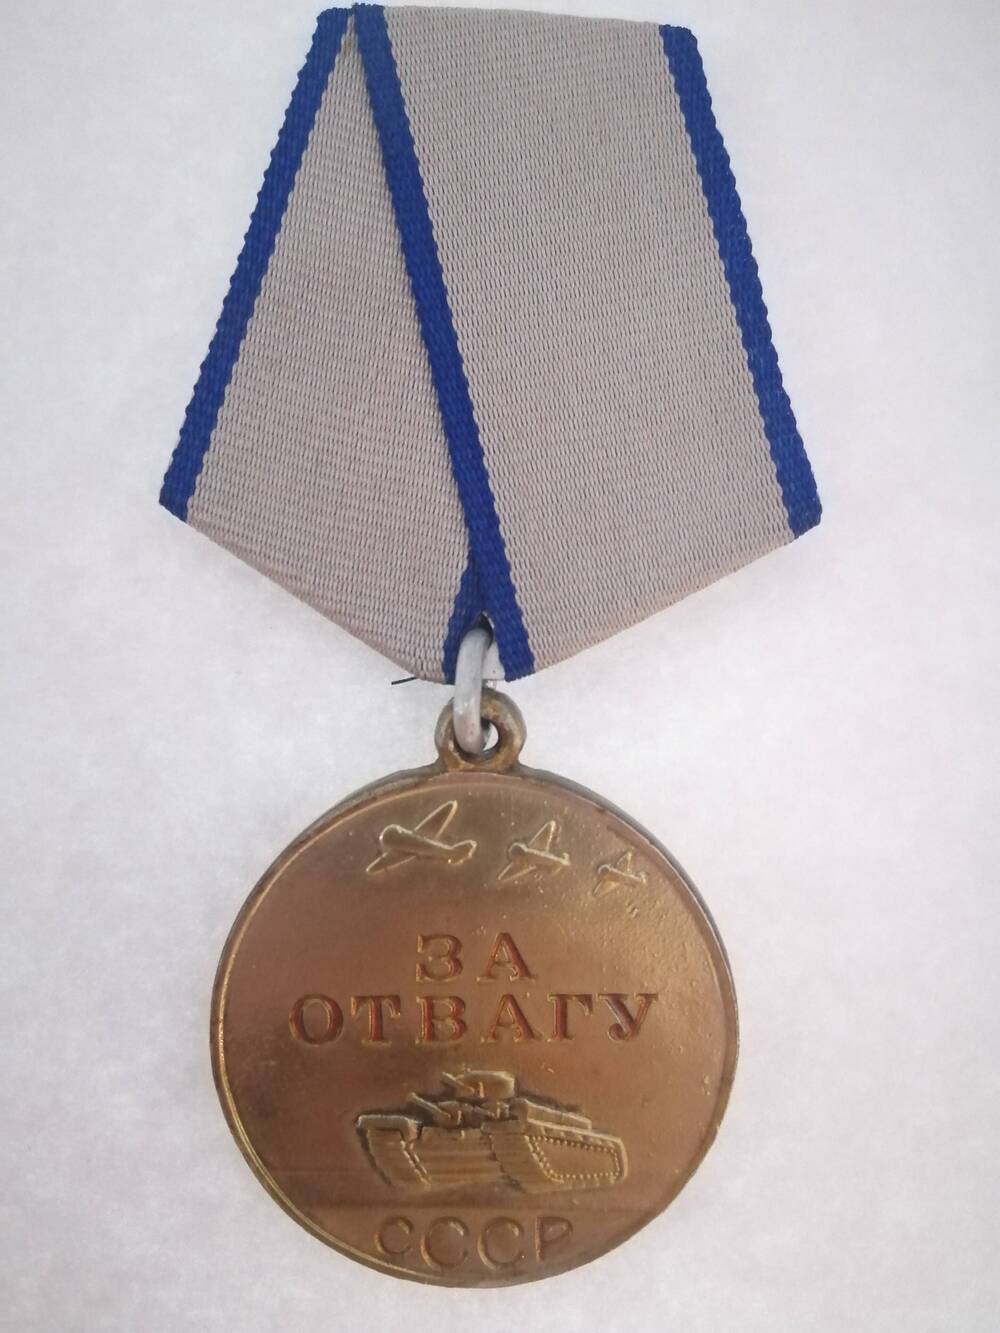 Медаль За отвагу №354520 награжденного Валиханова Ф.М. от 10.04.1954 г. На медали изображены танк и самолет и надпись красными буквами За отвагу СССР.